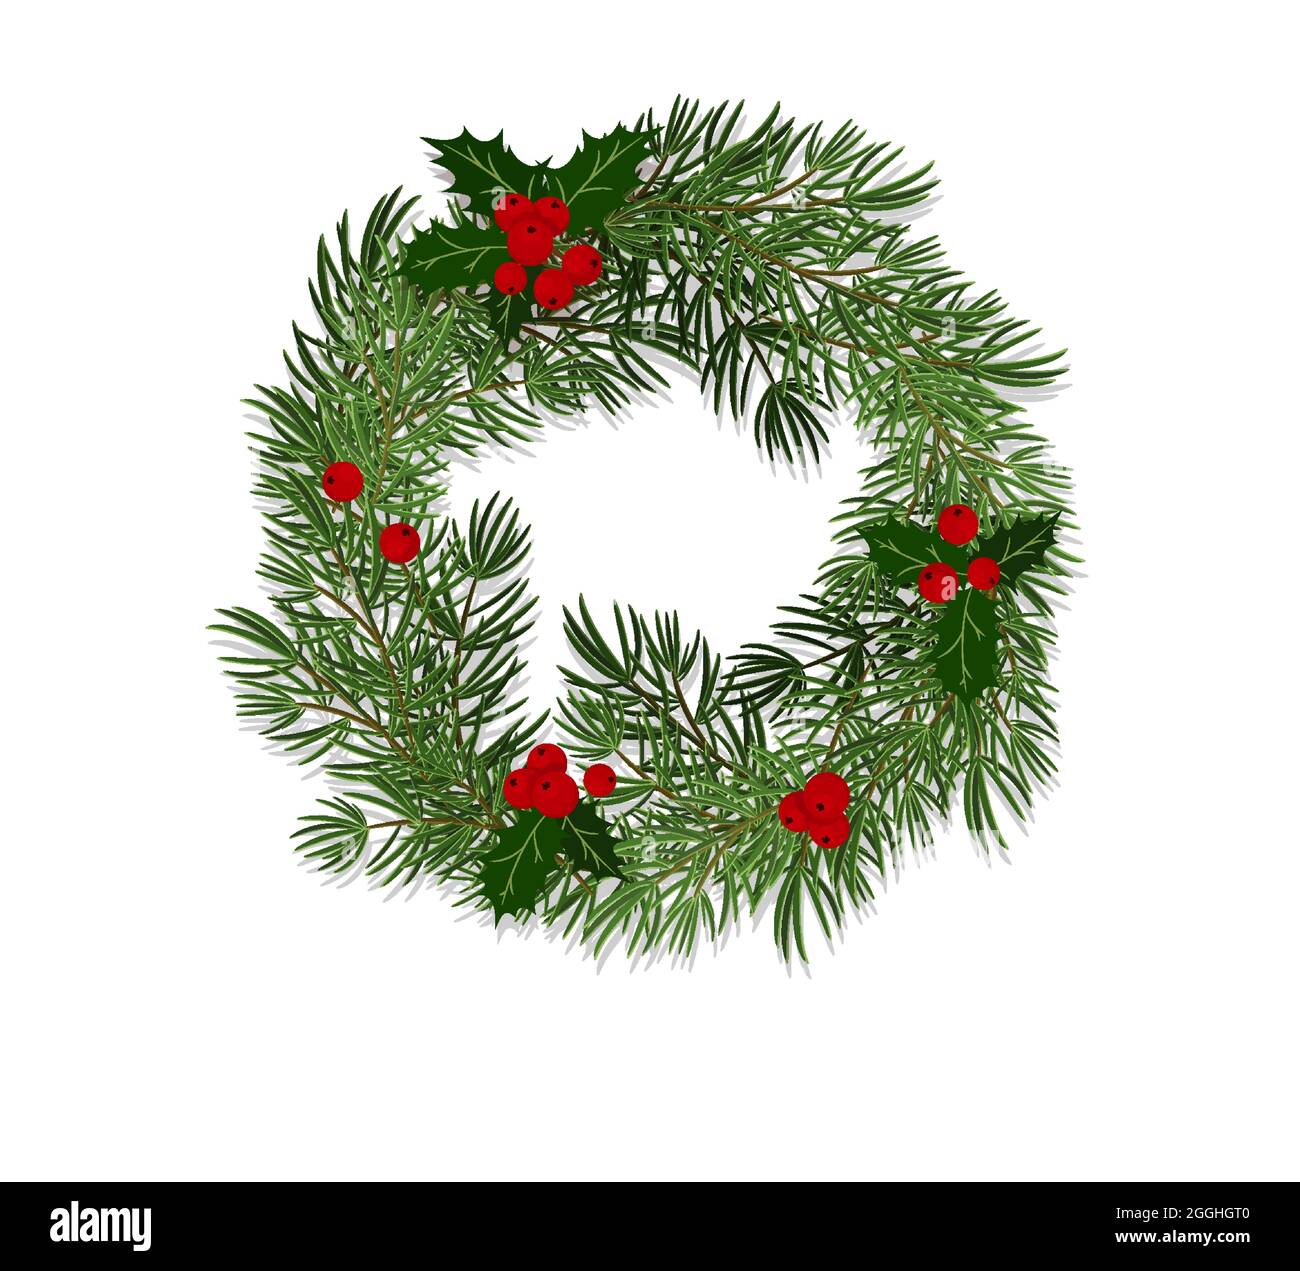 Corona di Natale fatta di rami di abete rosso decorato con foglie e acini di agrifoglio. Illustrazione vettoriale in stile piatto, isolata su sfondo bianco Illustrazione Vettoriale